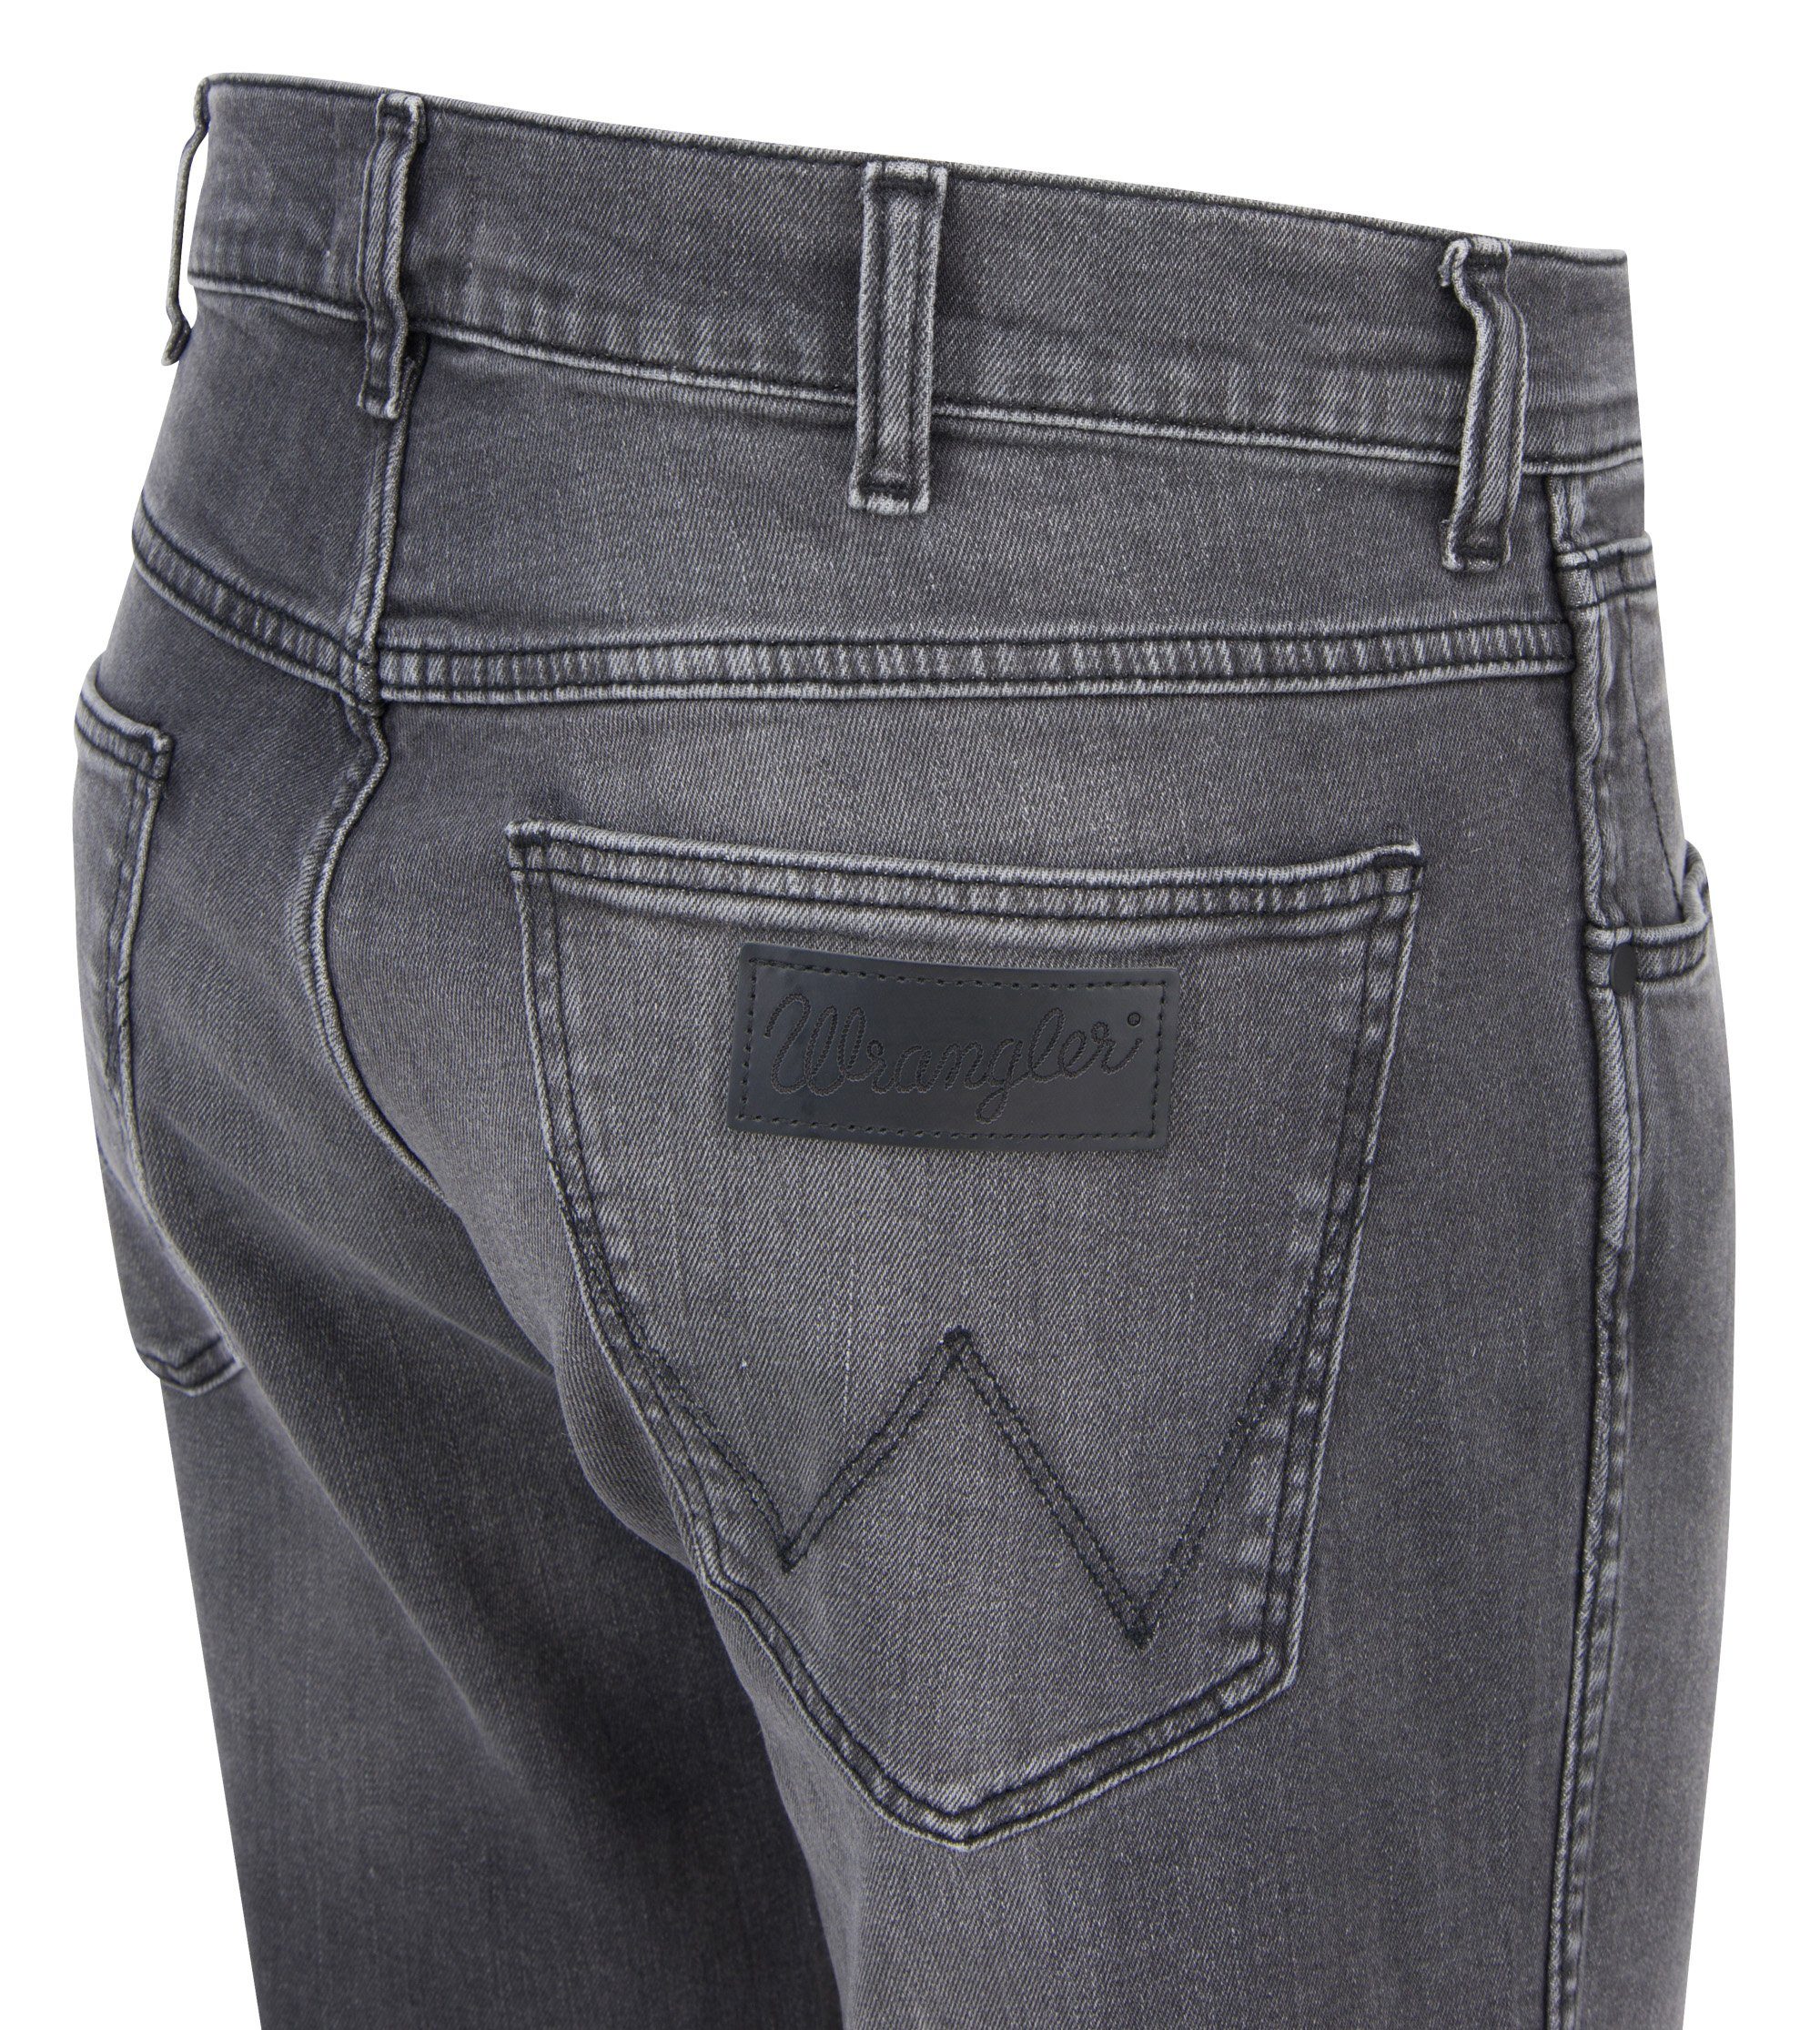 5-Pocket-Jeans WRANGLER GREENSBORO W15QHT36Q Wrangler grey dust